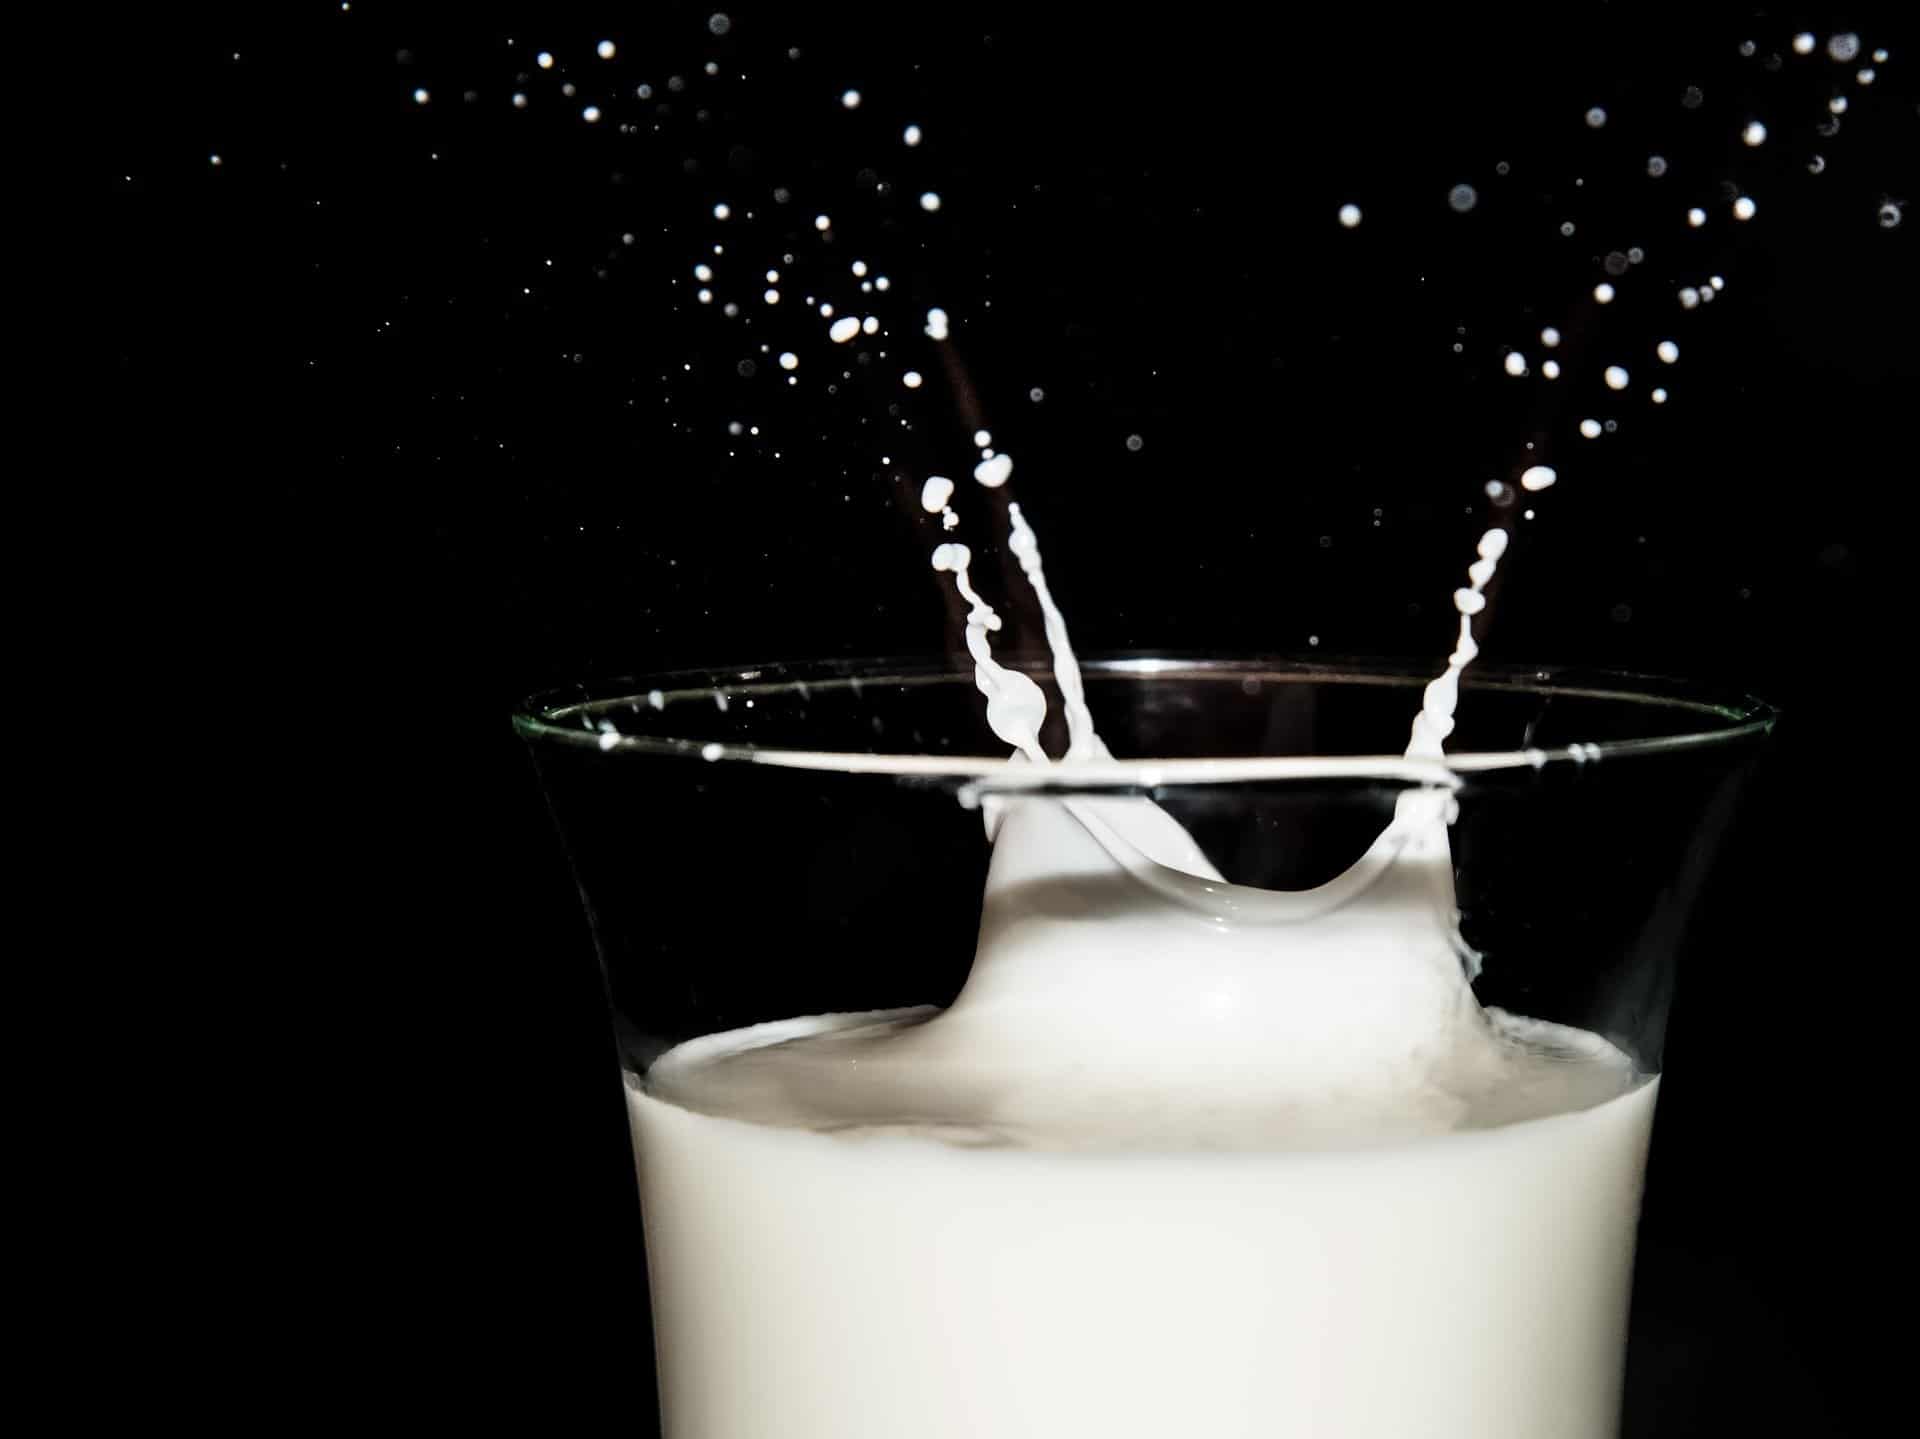 Castilla y León es una de las Comunidades que más leche y derivados consume en España, según estudio